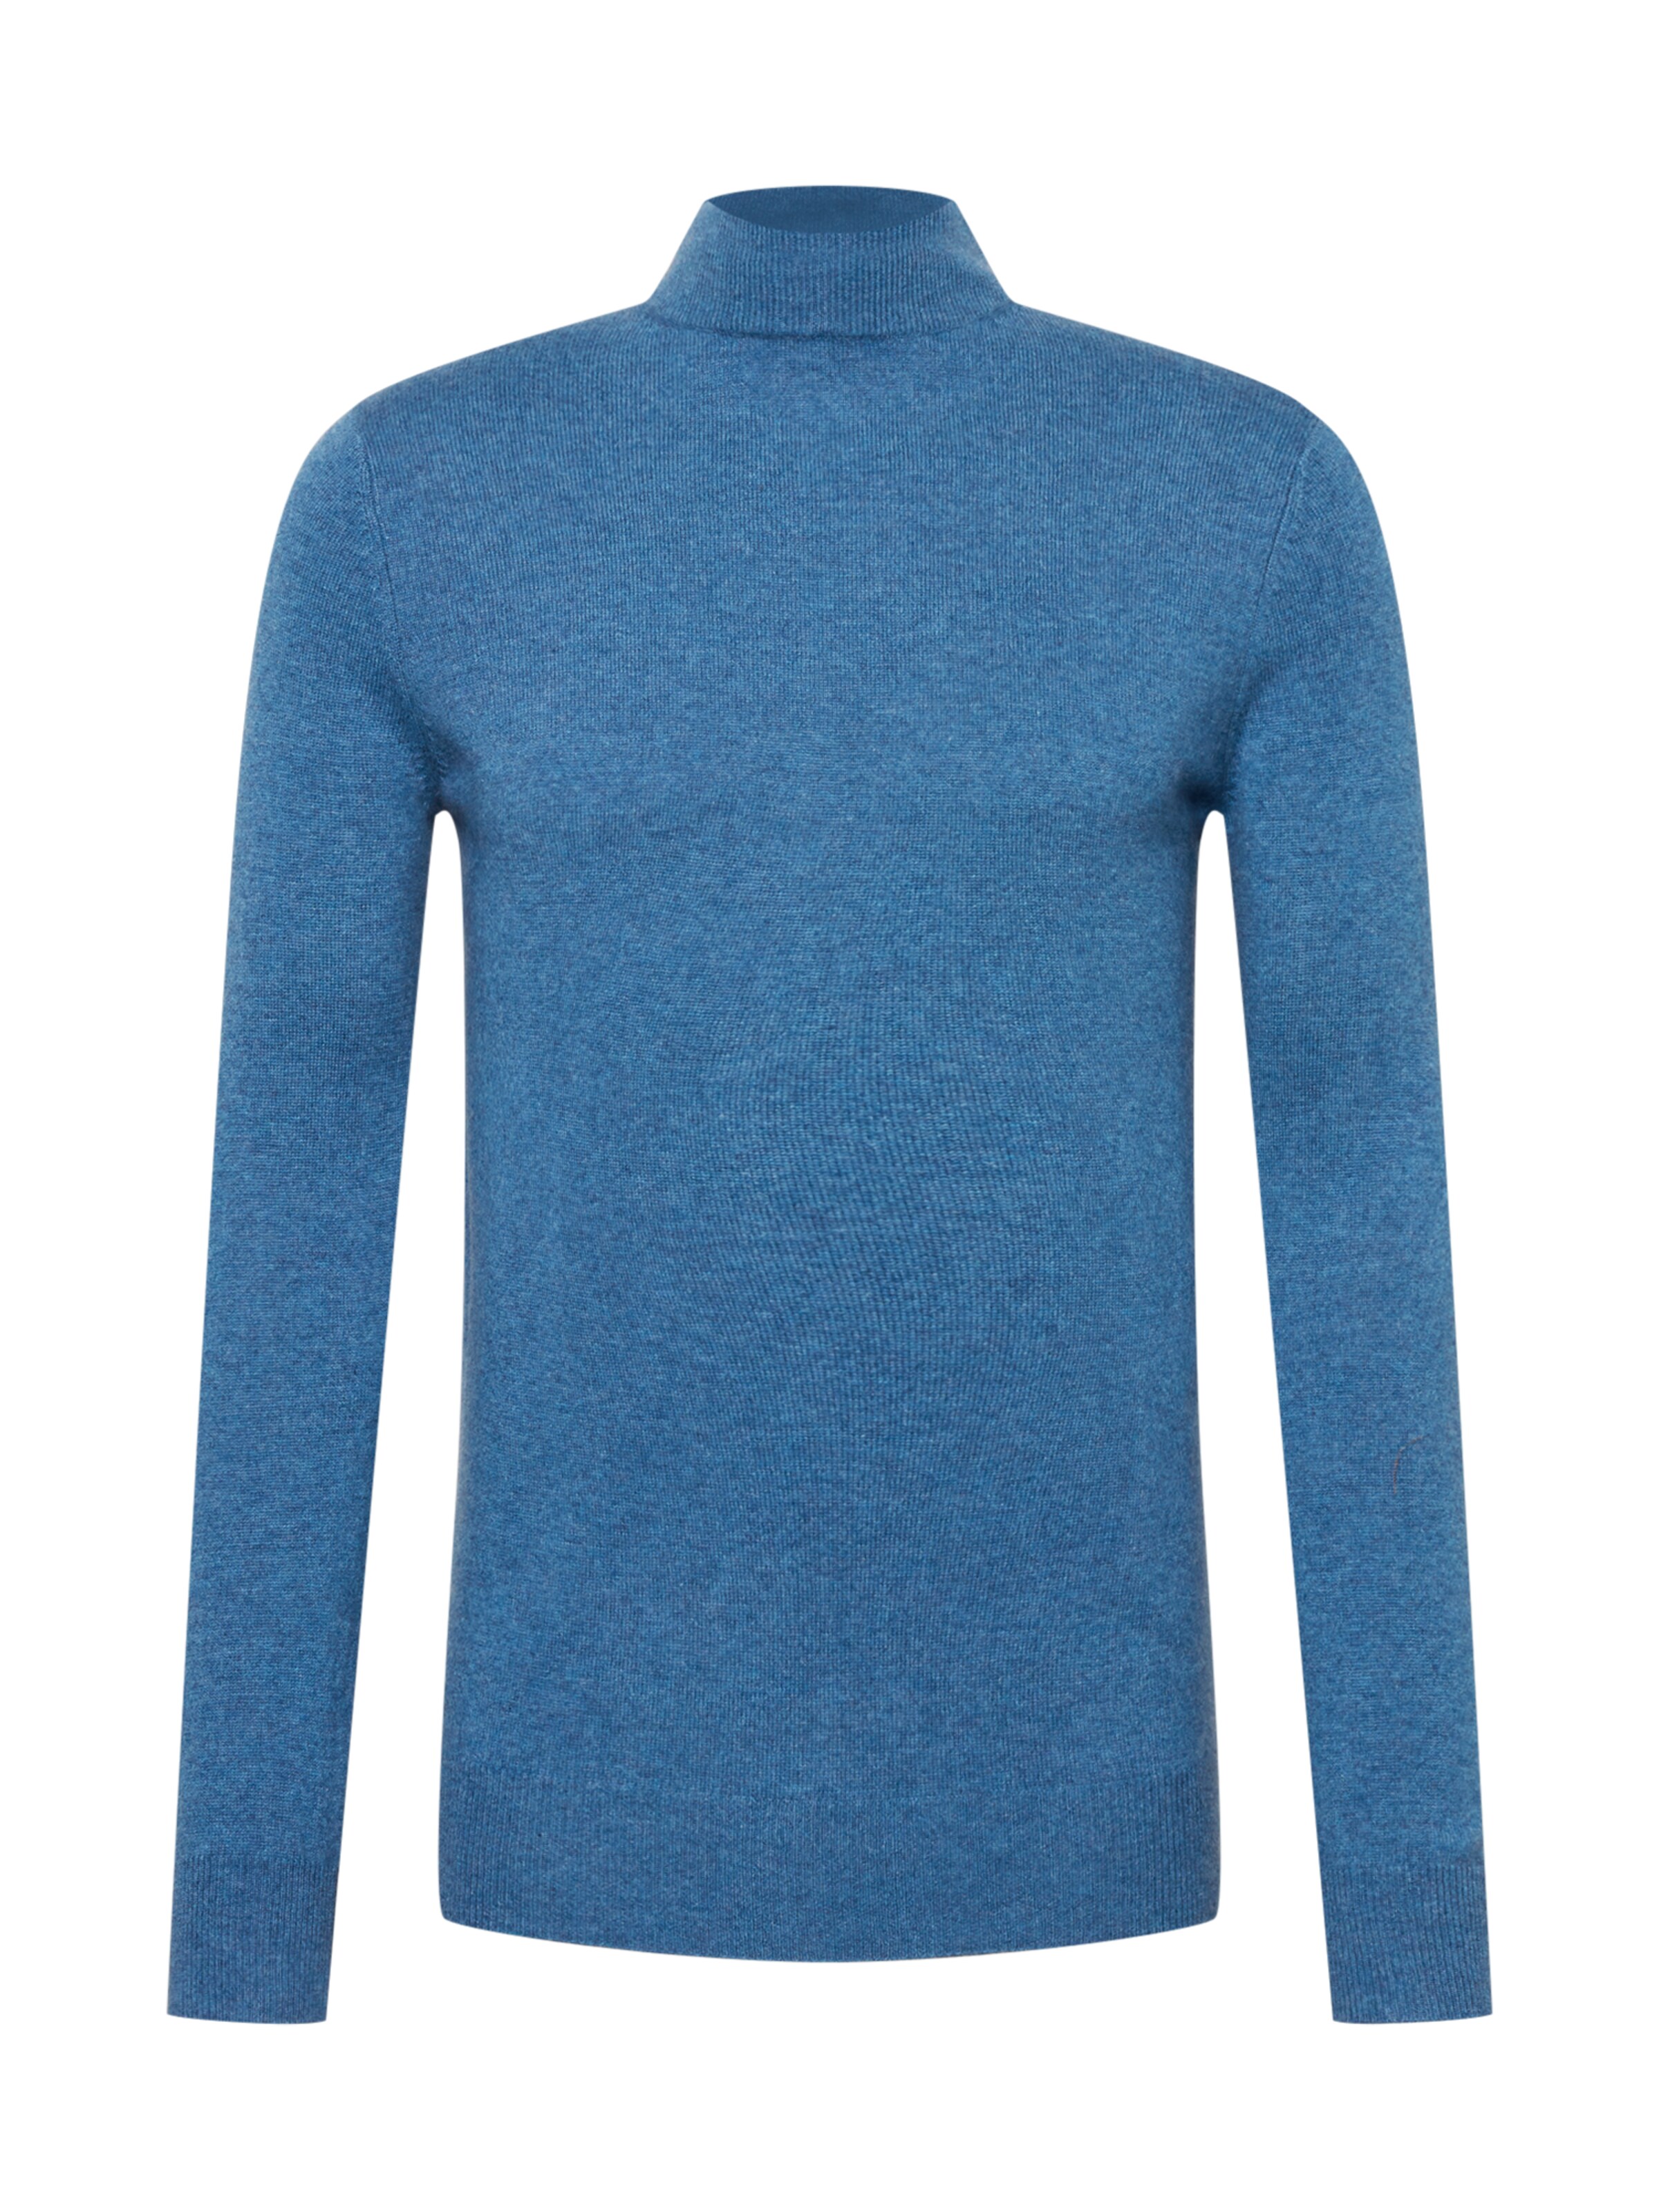 5tSSn Uomo Pure Cashmere NYC Pullover in Blu 